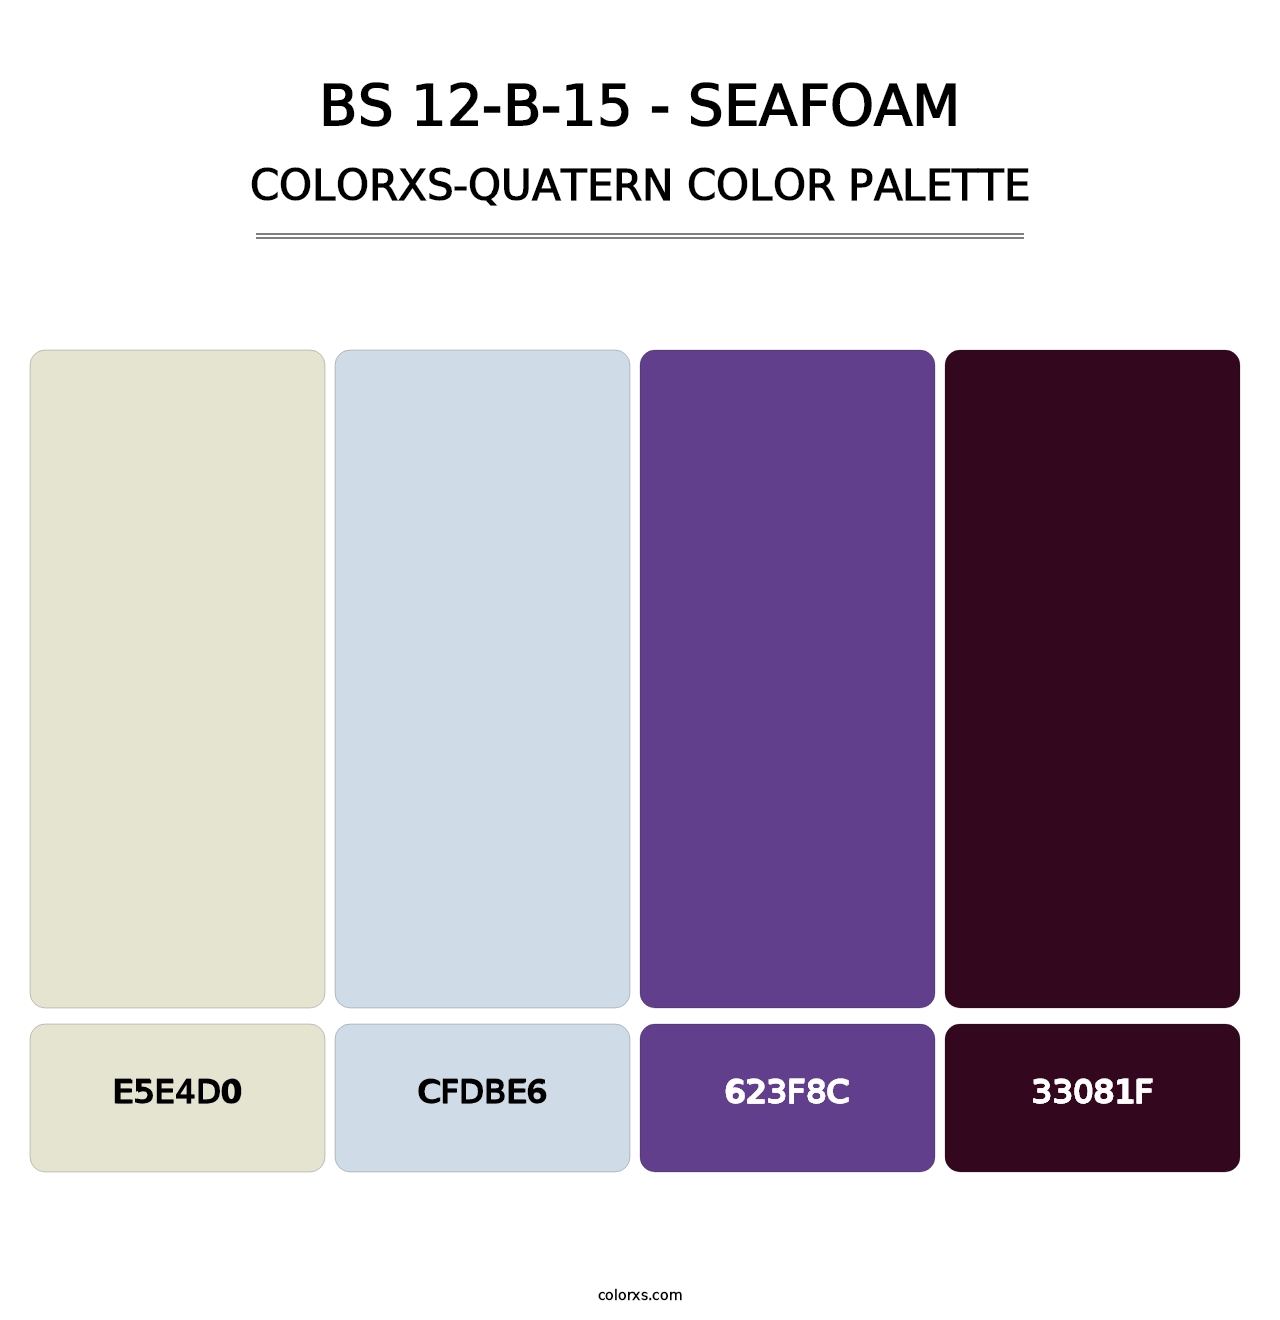 BS 12-B-15 - Seafoam - Colorxs Quatern Palette